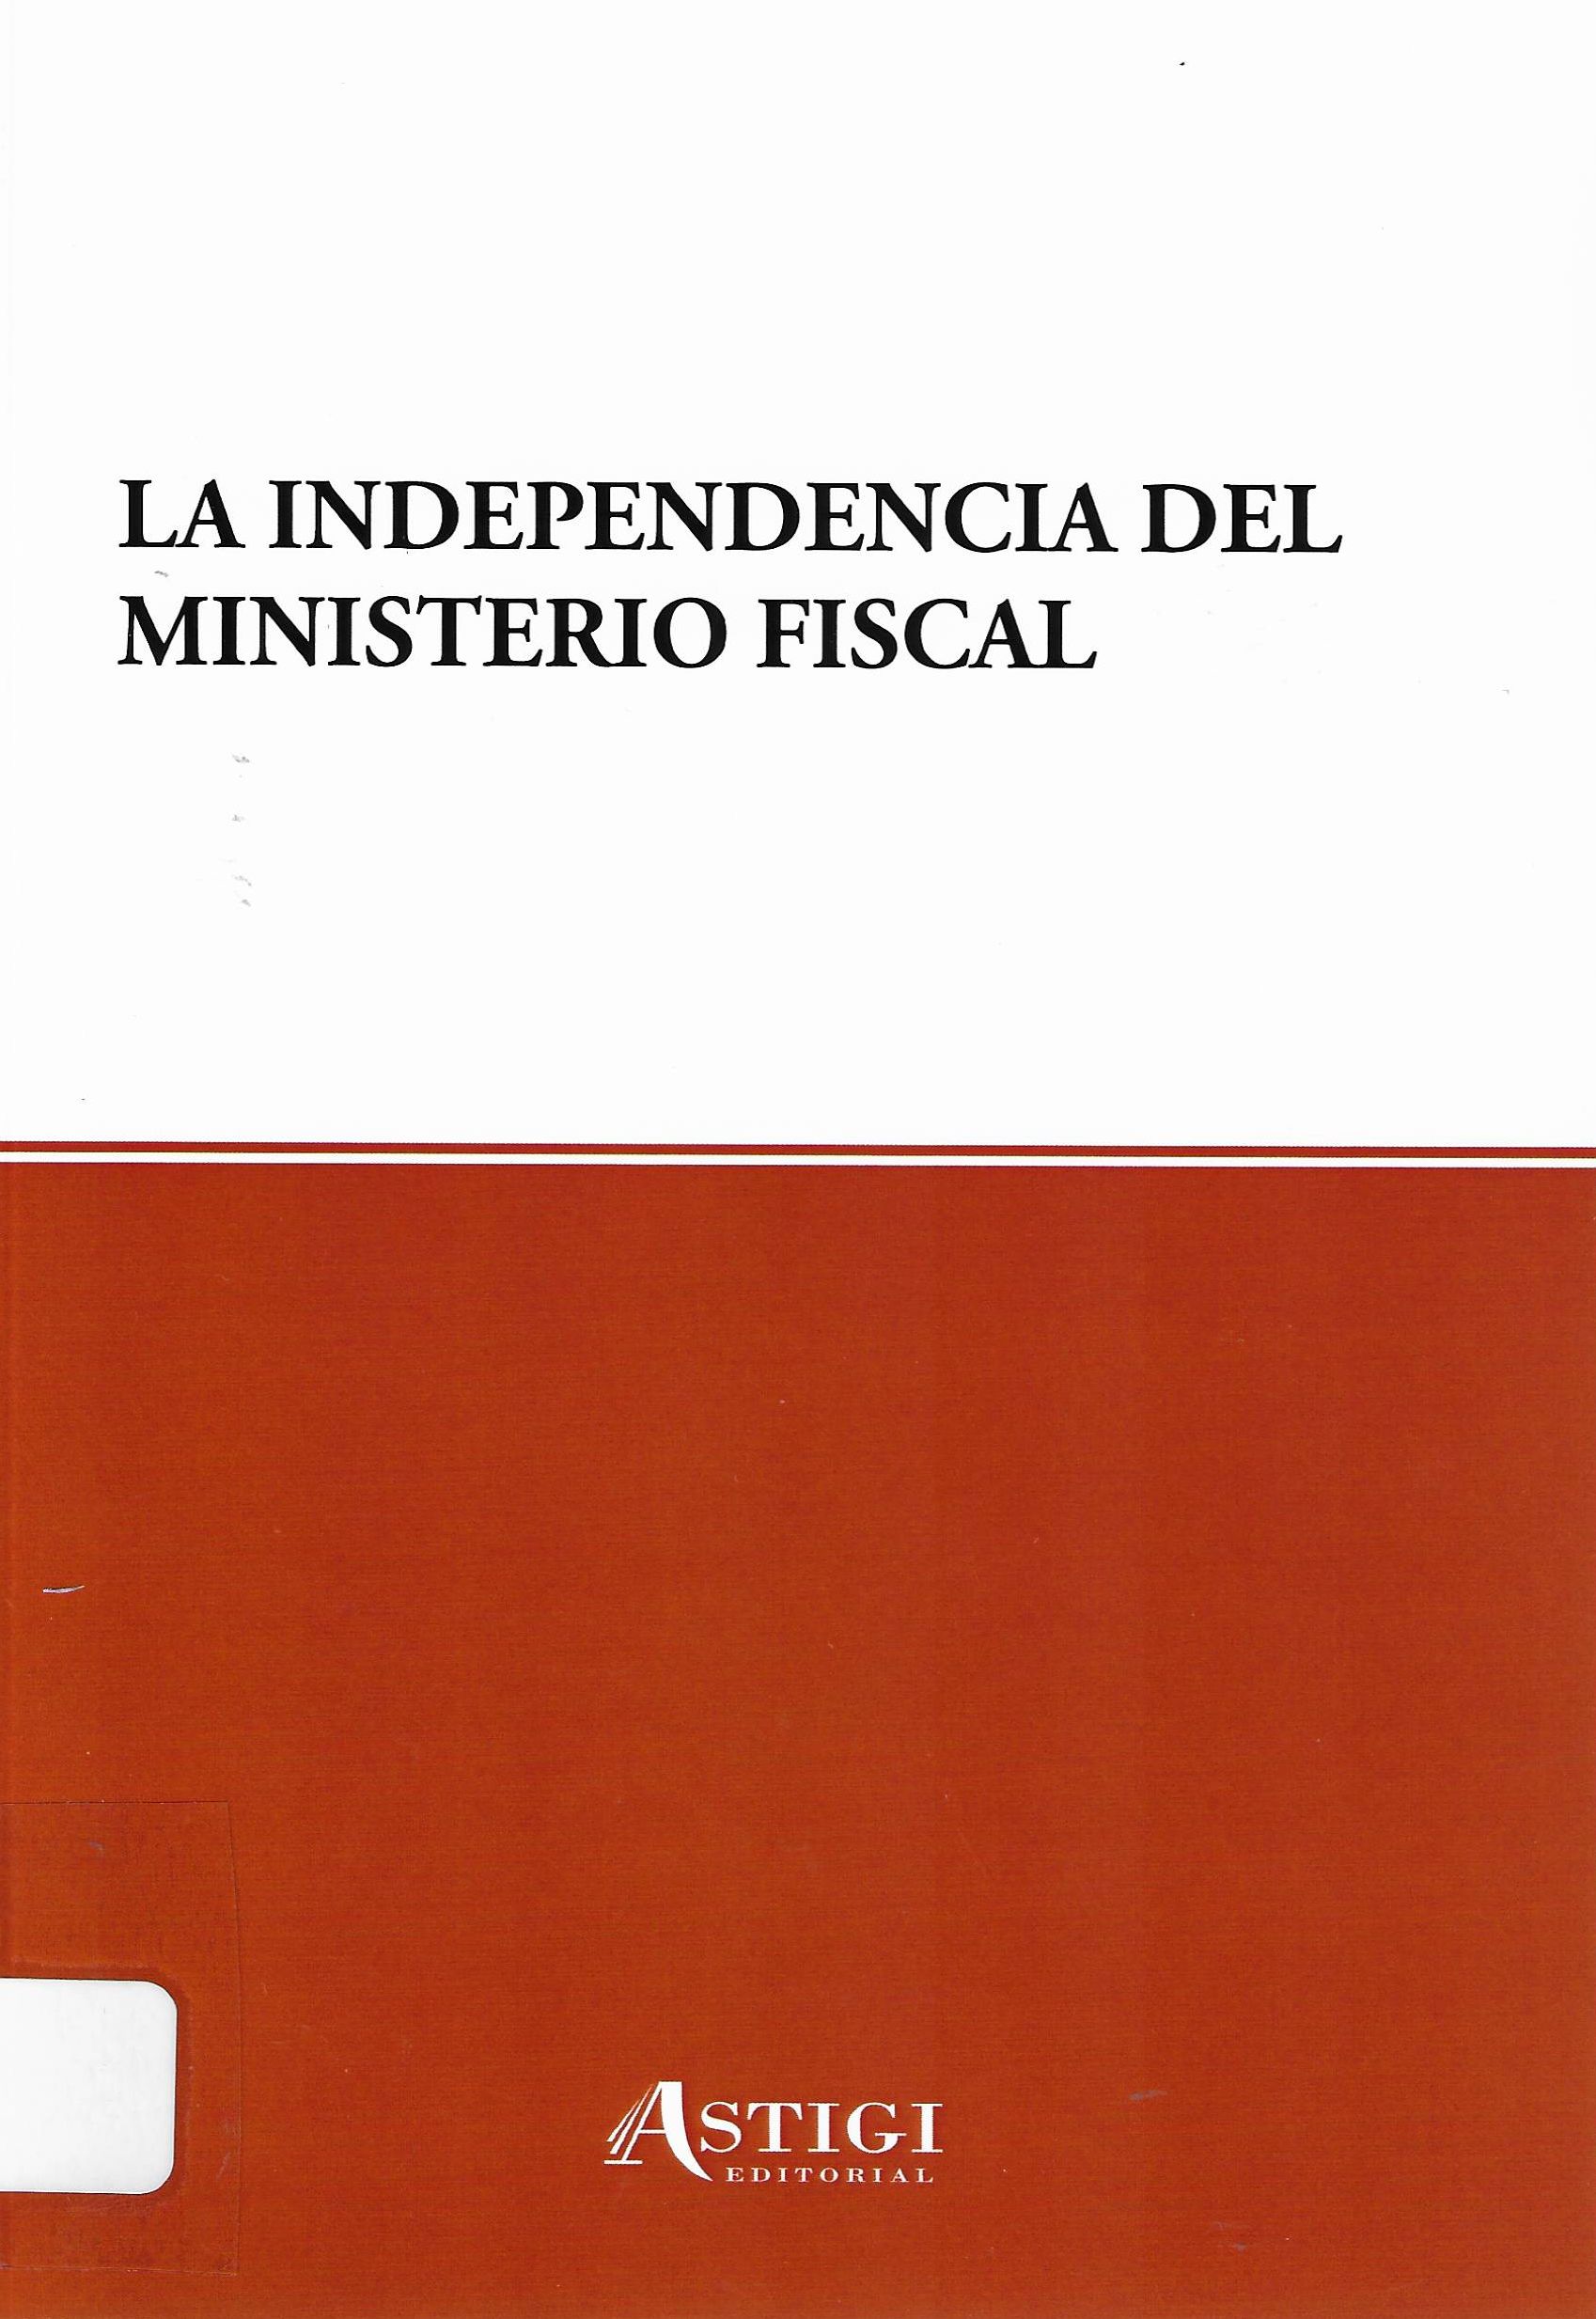 Imagen de portada del libro La independencia del Ministerio Fiscal